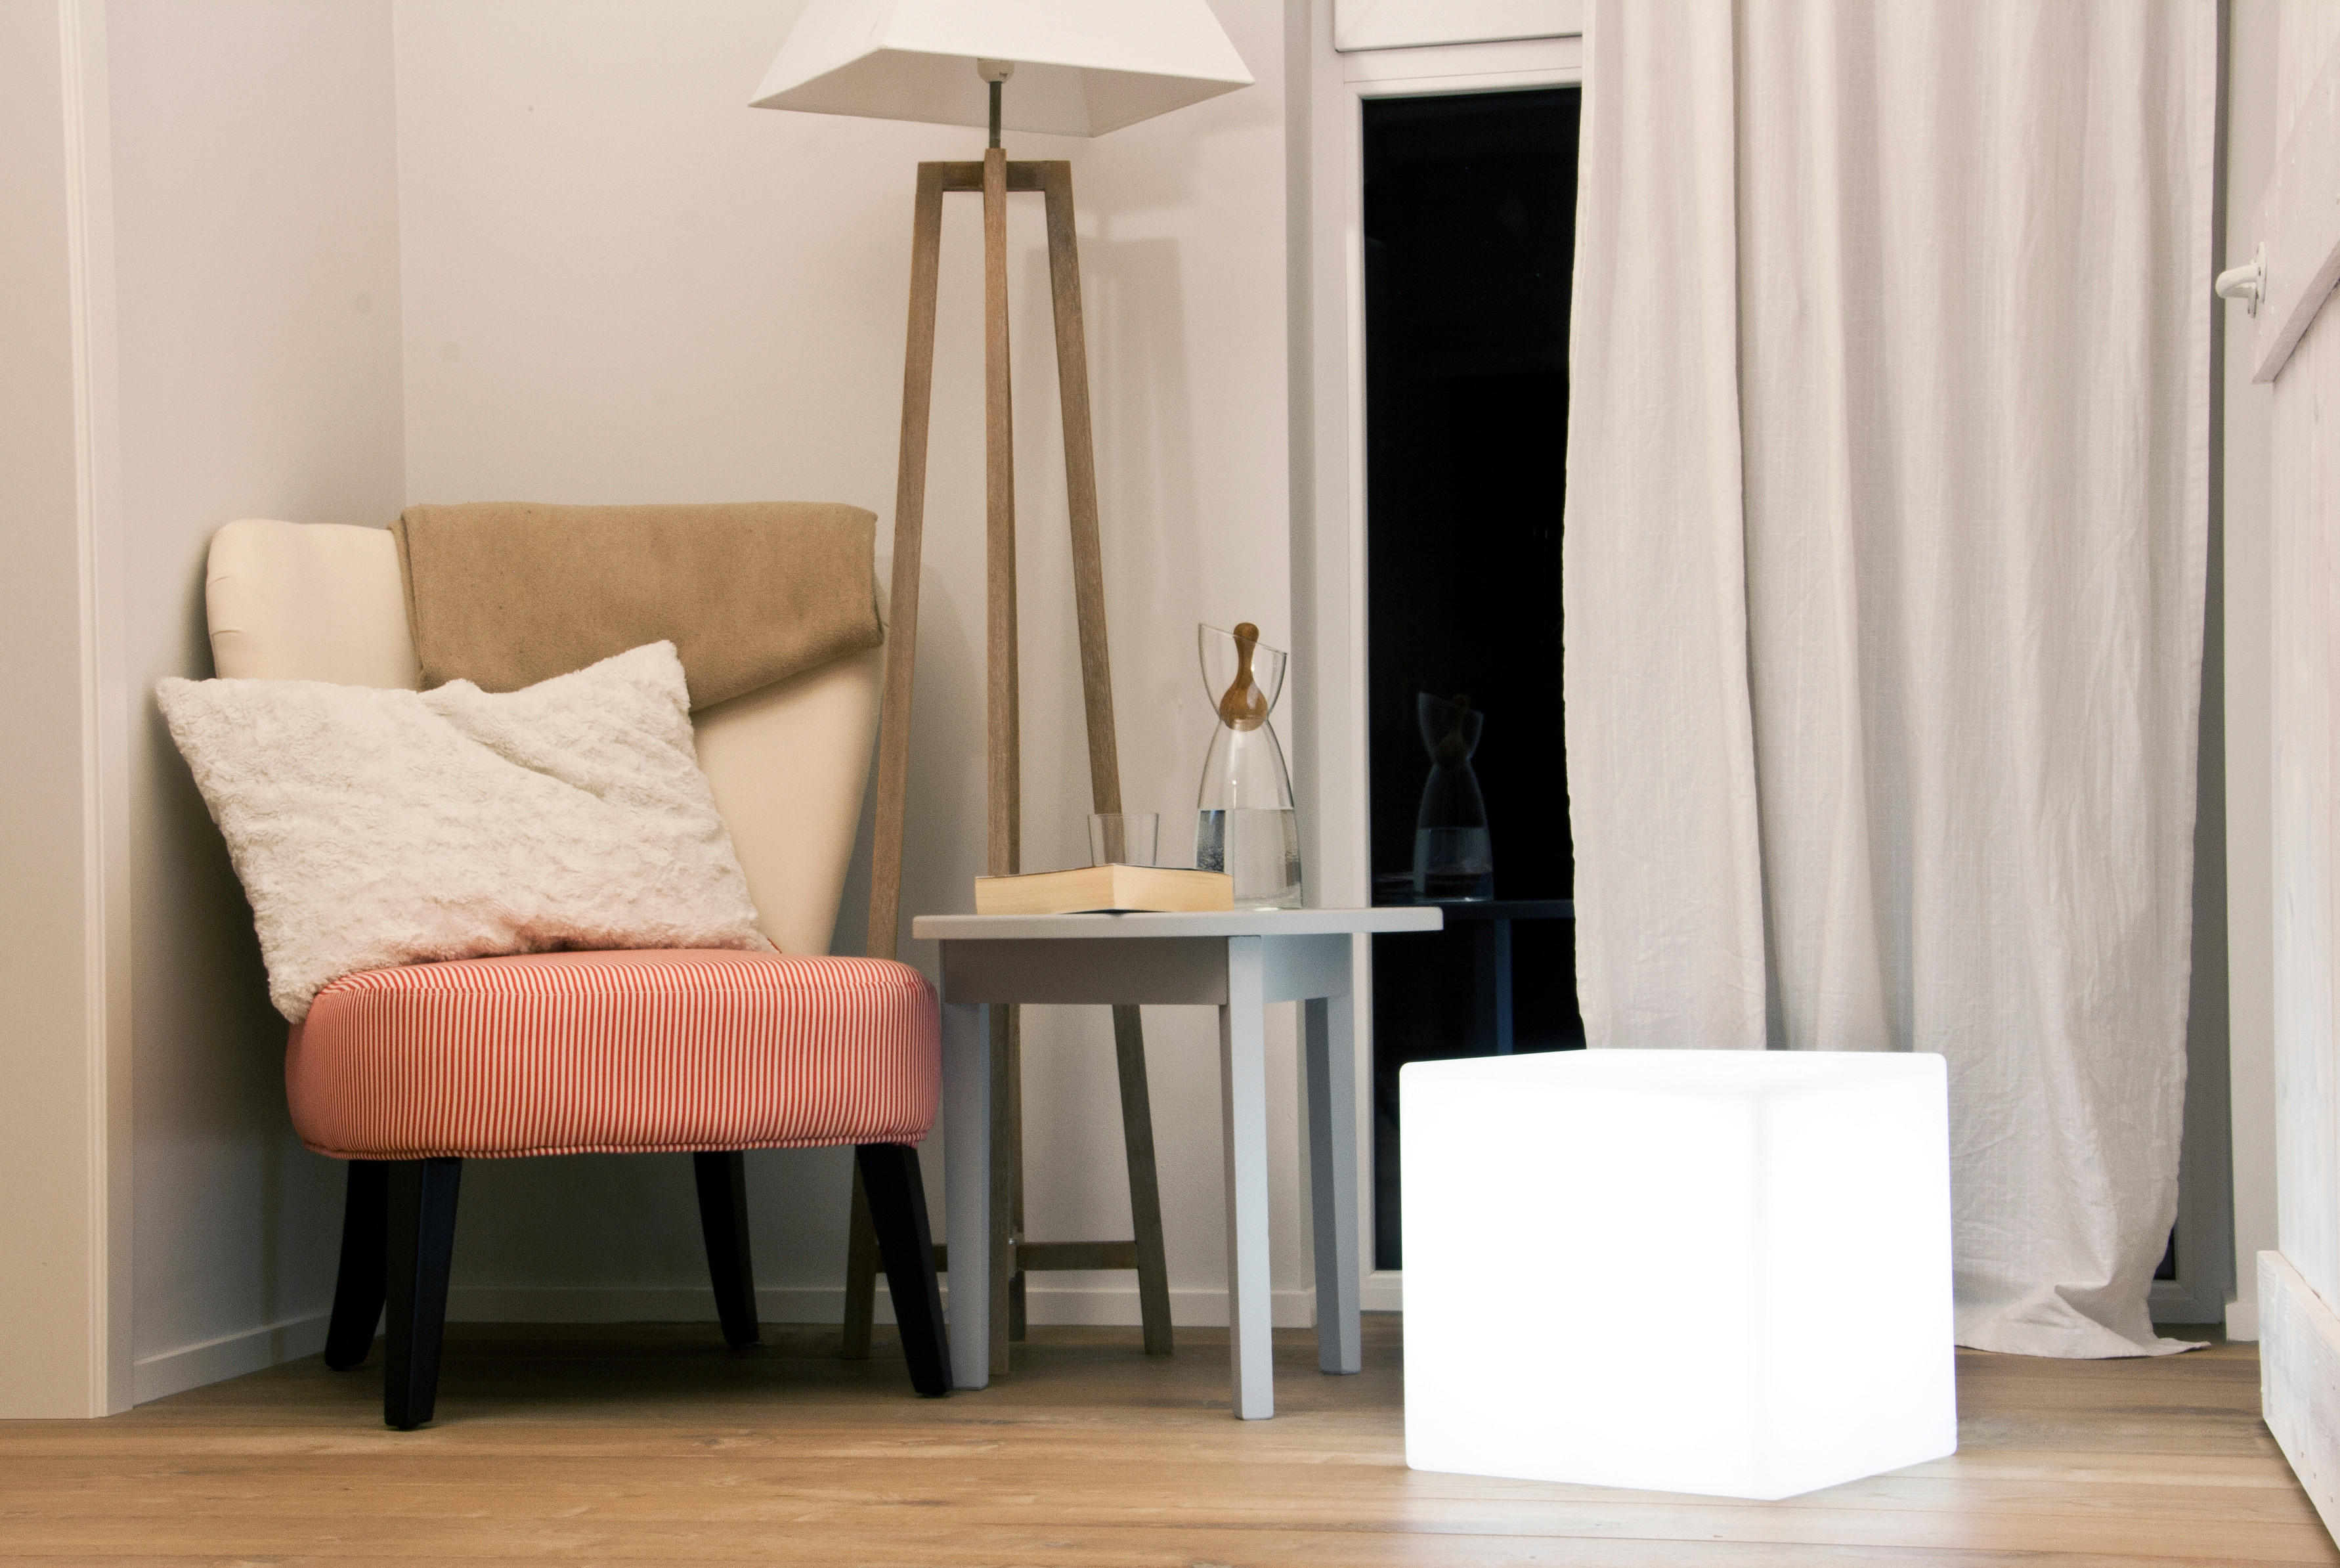 LED-LAMPA 33/33 cm   - vit, Basics, plast (33/33cm) - Ambia Home